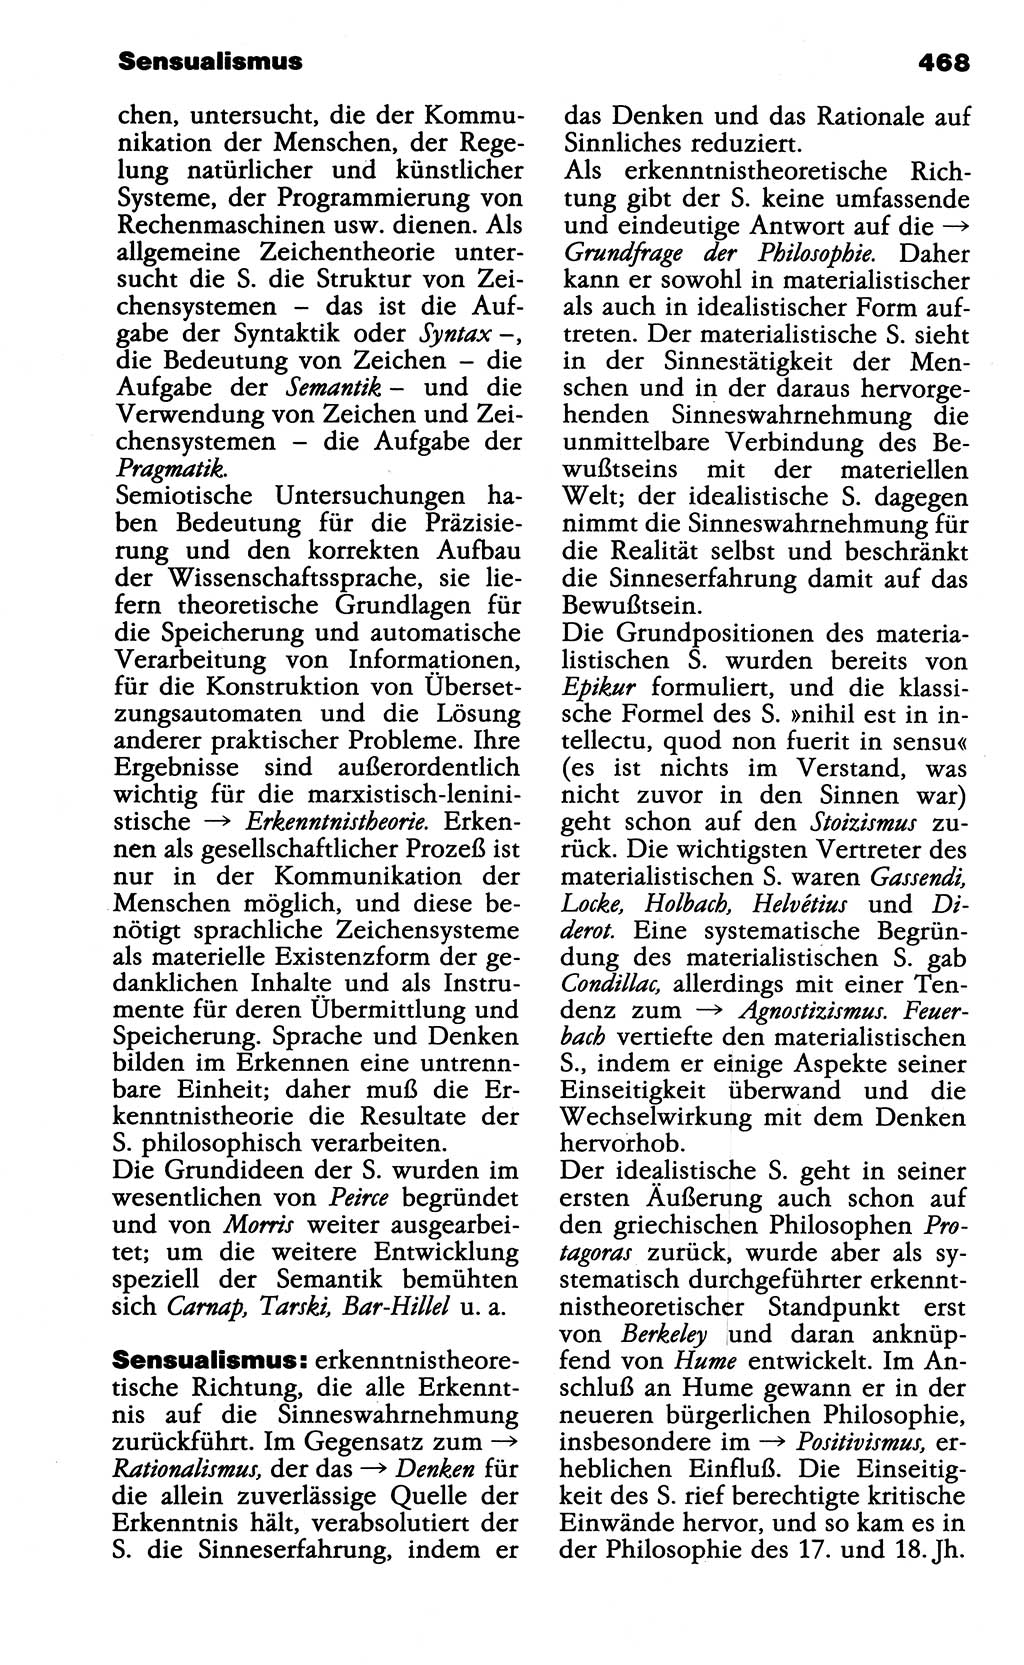 Wörterbuch der marxistisch-leninistischen Philosophie [Deutsche Demokratische Republik (DDR)] 1985, Seite 468 (Wb. ML Phil. DDR 1985, S. 468)